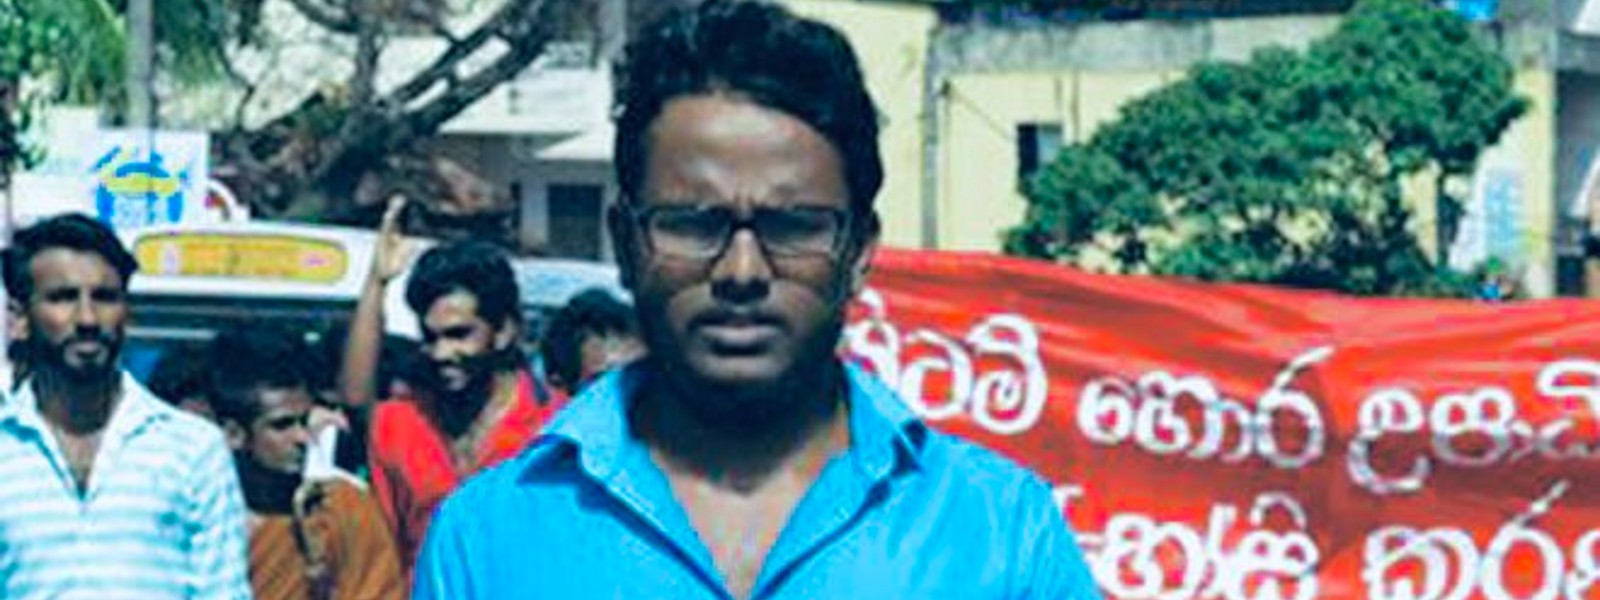 Student Activist Mangala Maddumage arrested